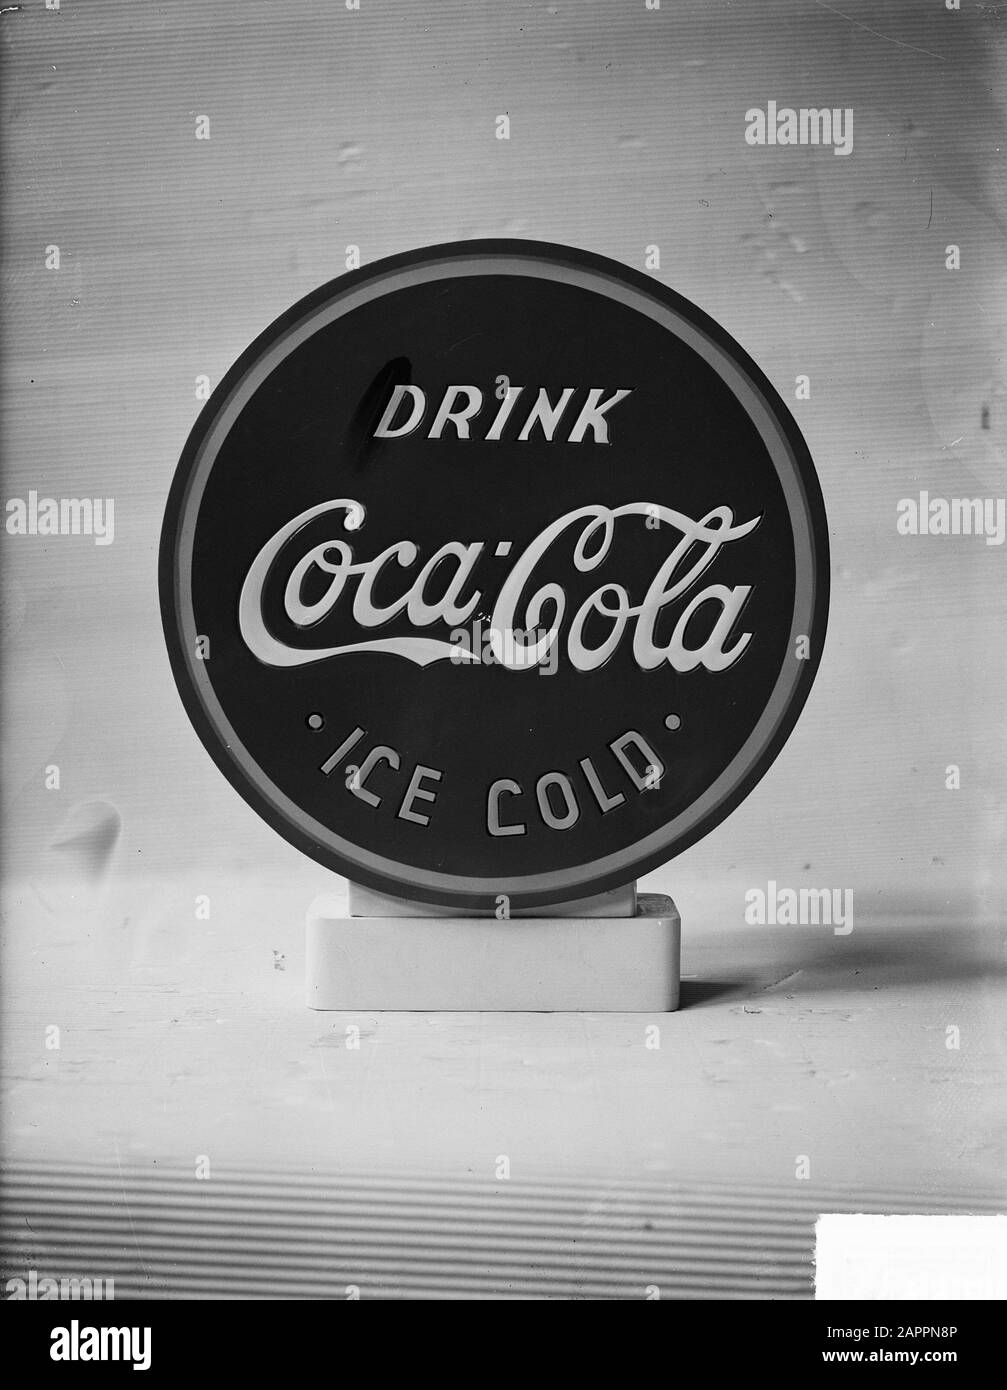 Publicité Kemperman Coca Cola Date: 10 Avril 1949 Nom De L'Institution: Coca Cola, Kemperman Banque D'Images